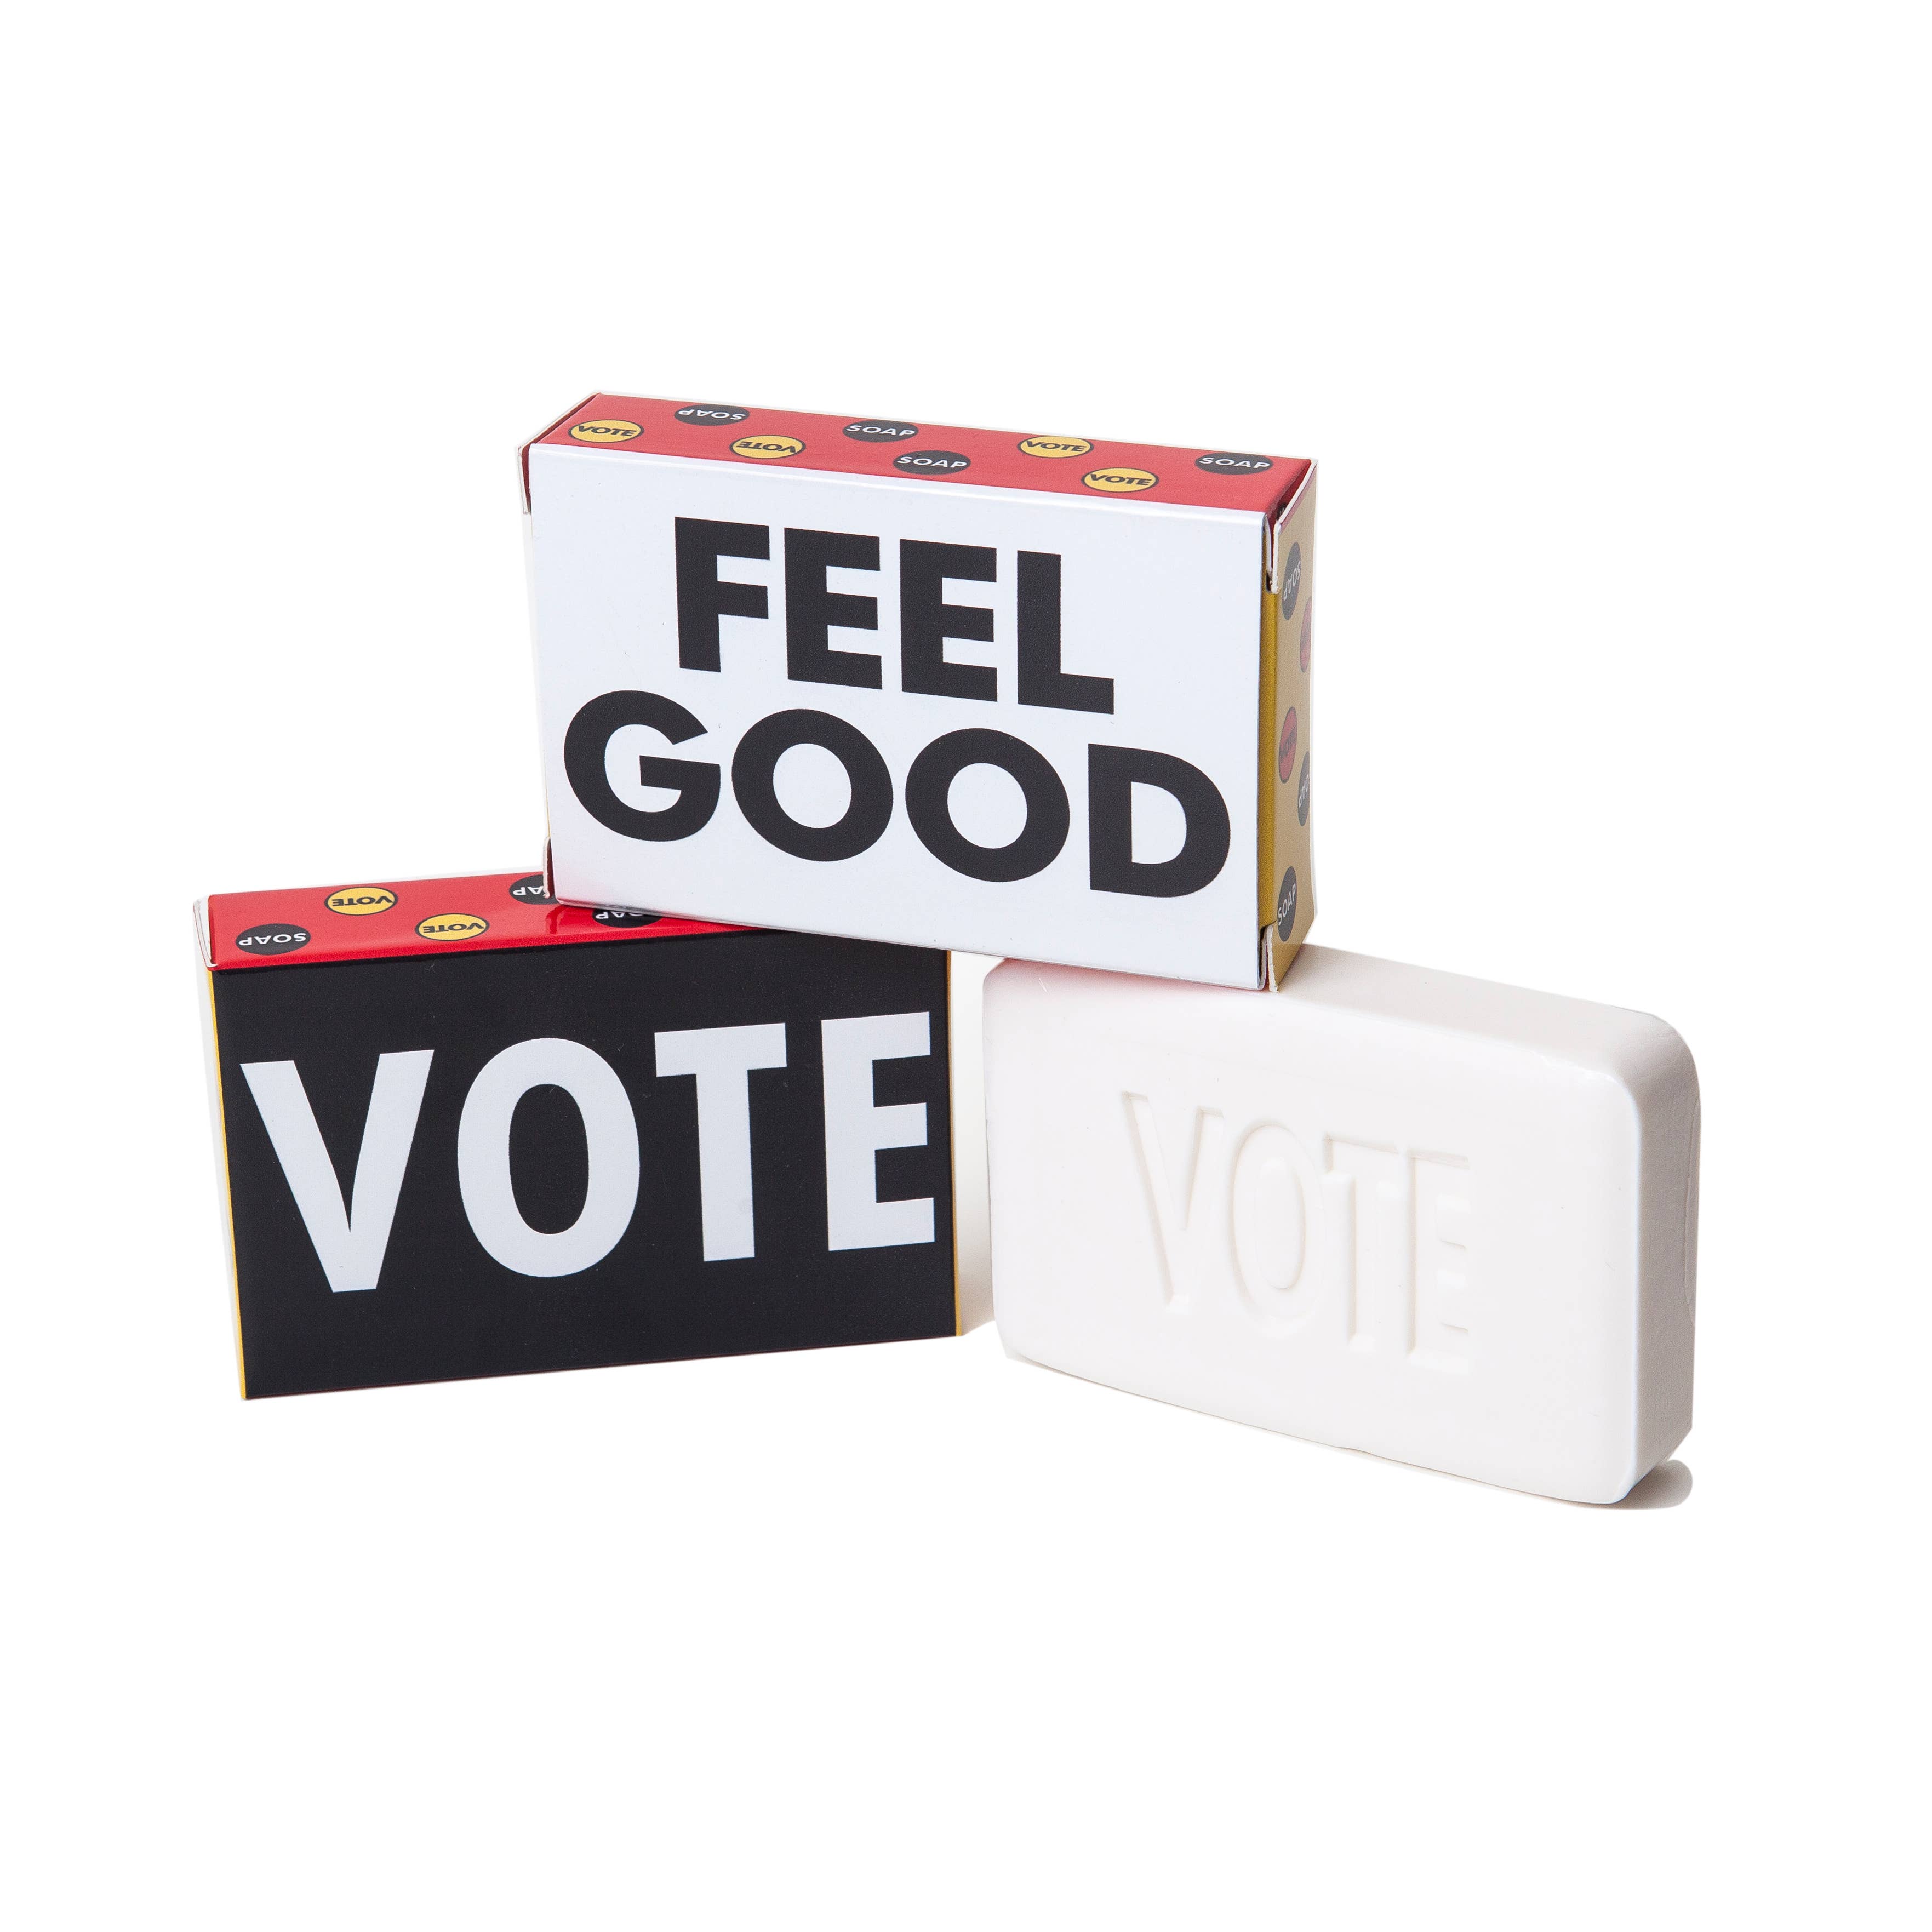 The Vote Soap